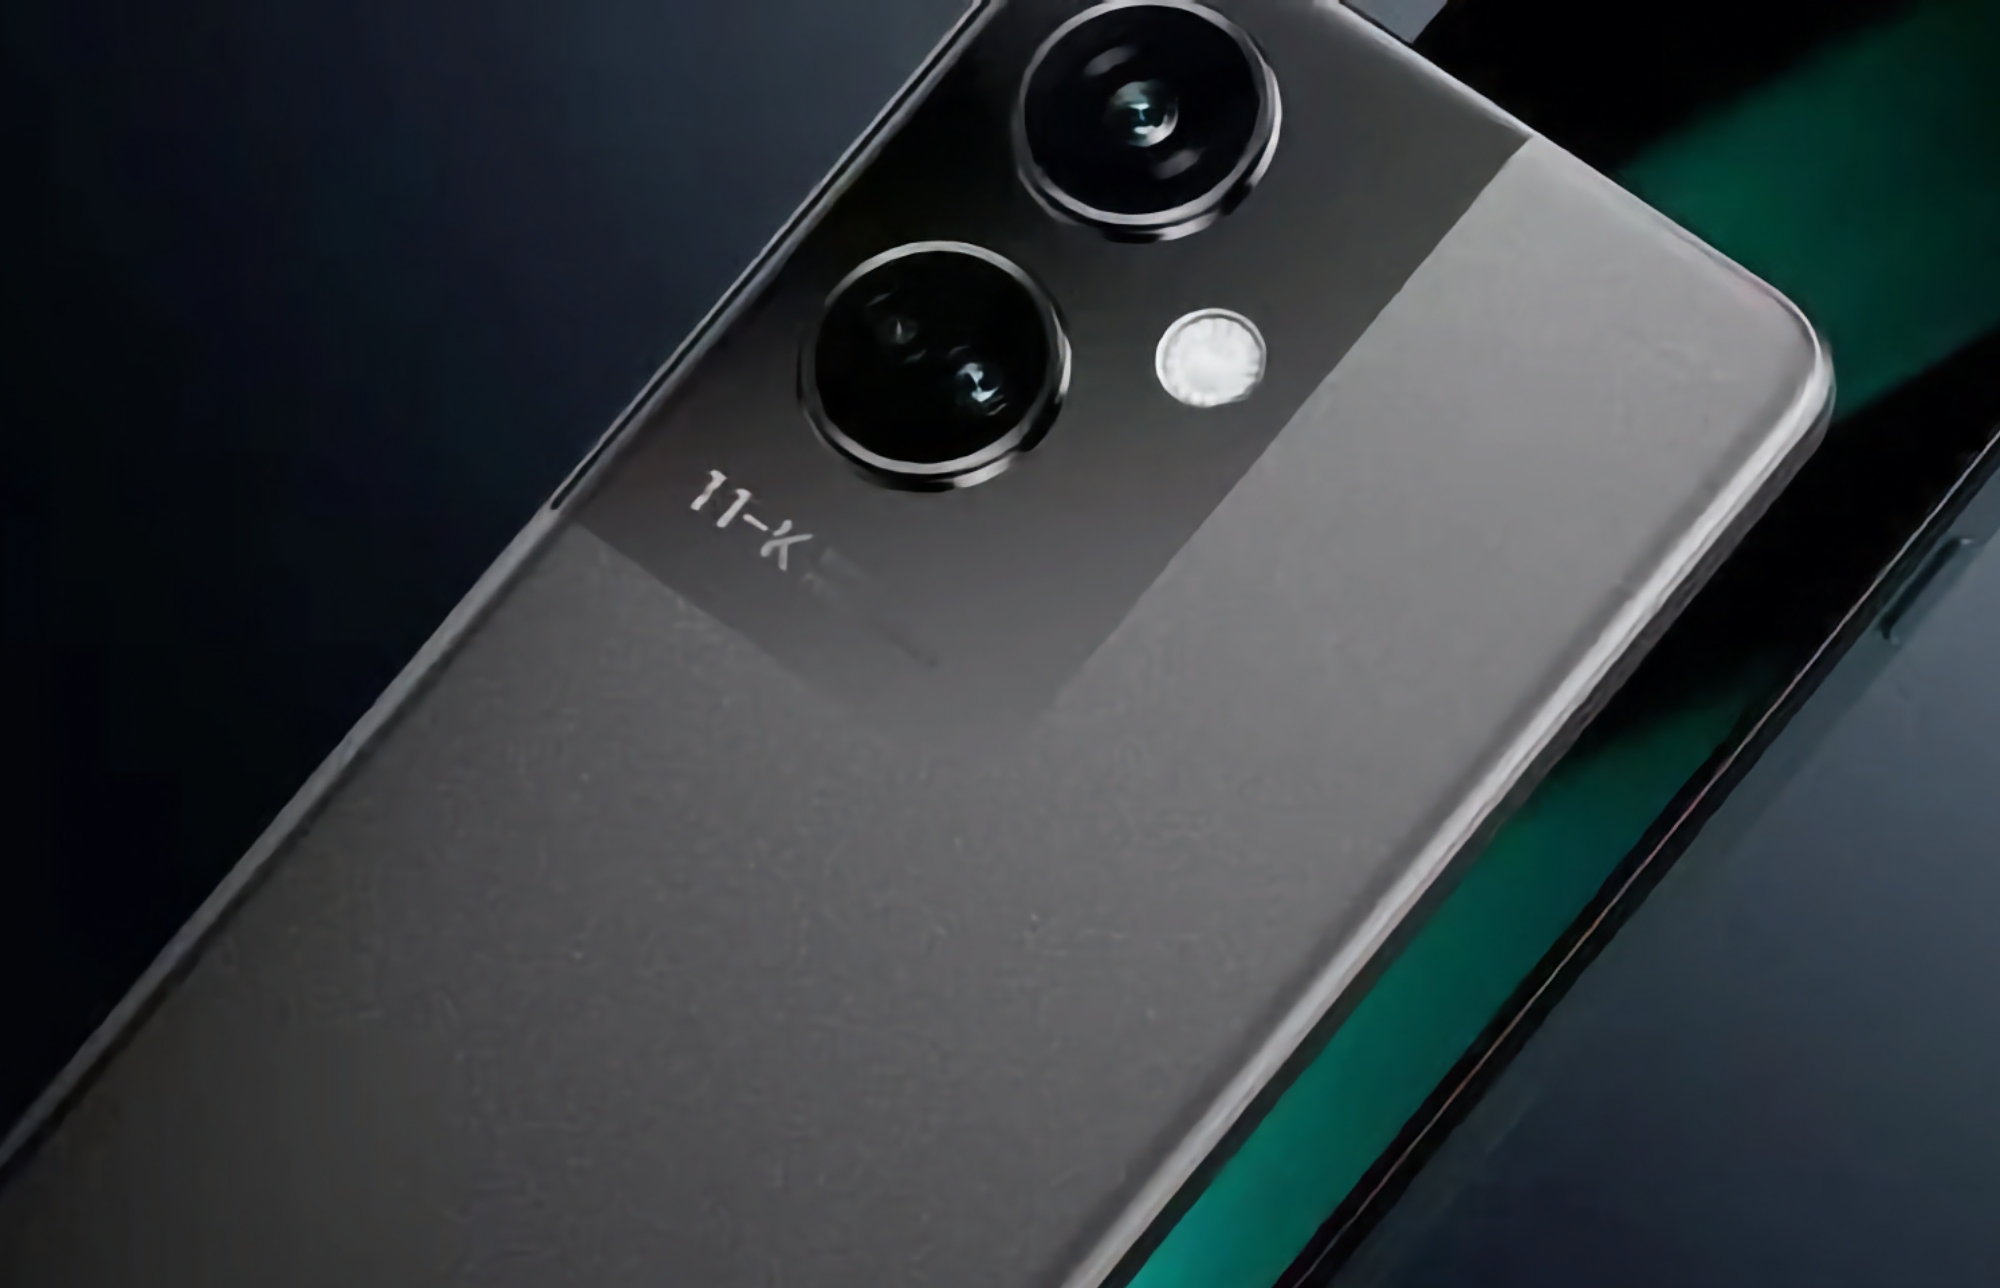 OPPO förbereder sig för att lansera en ny smartphone i K-serien med Sony IMX890 flaggskeppskamera